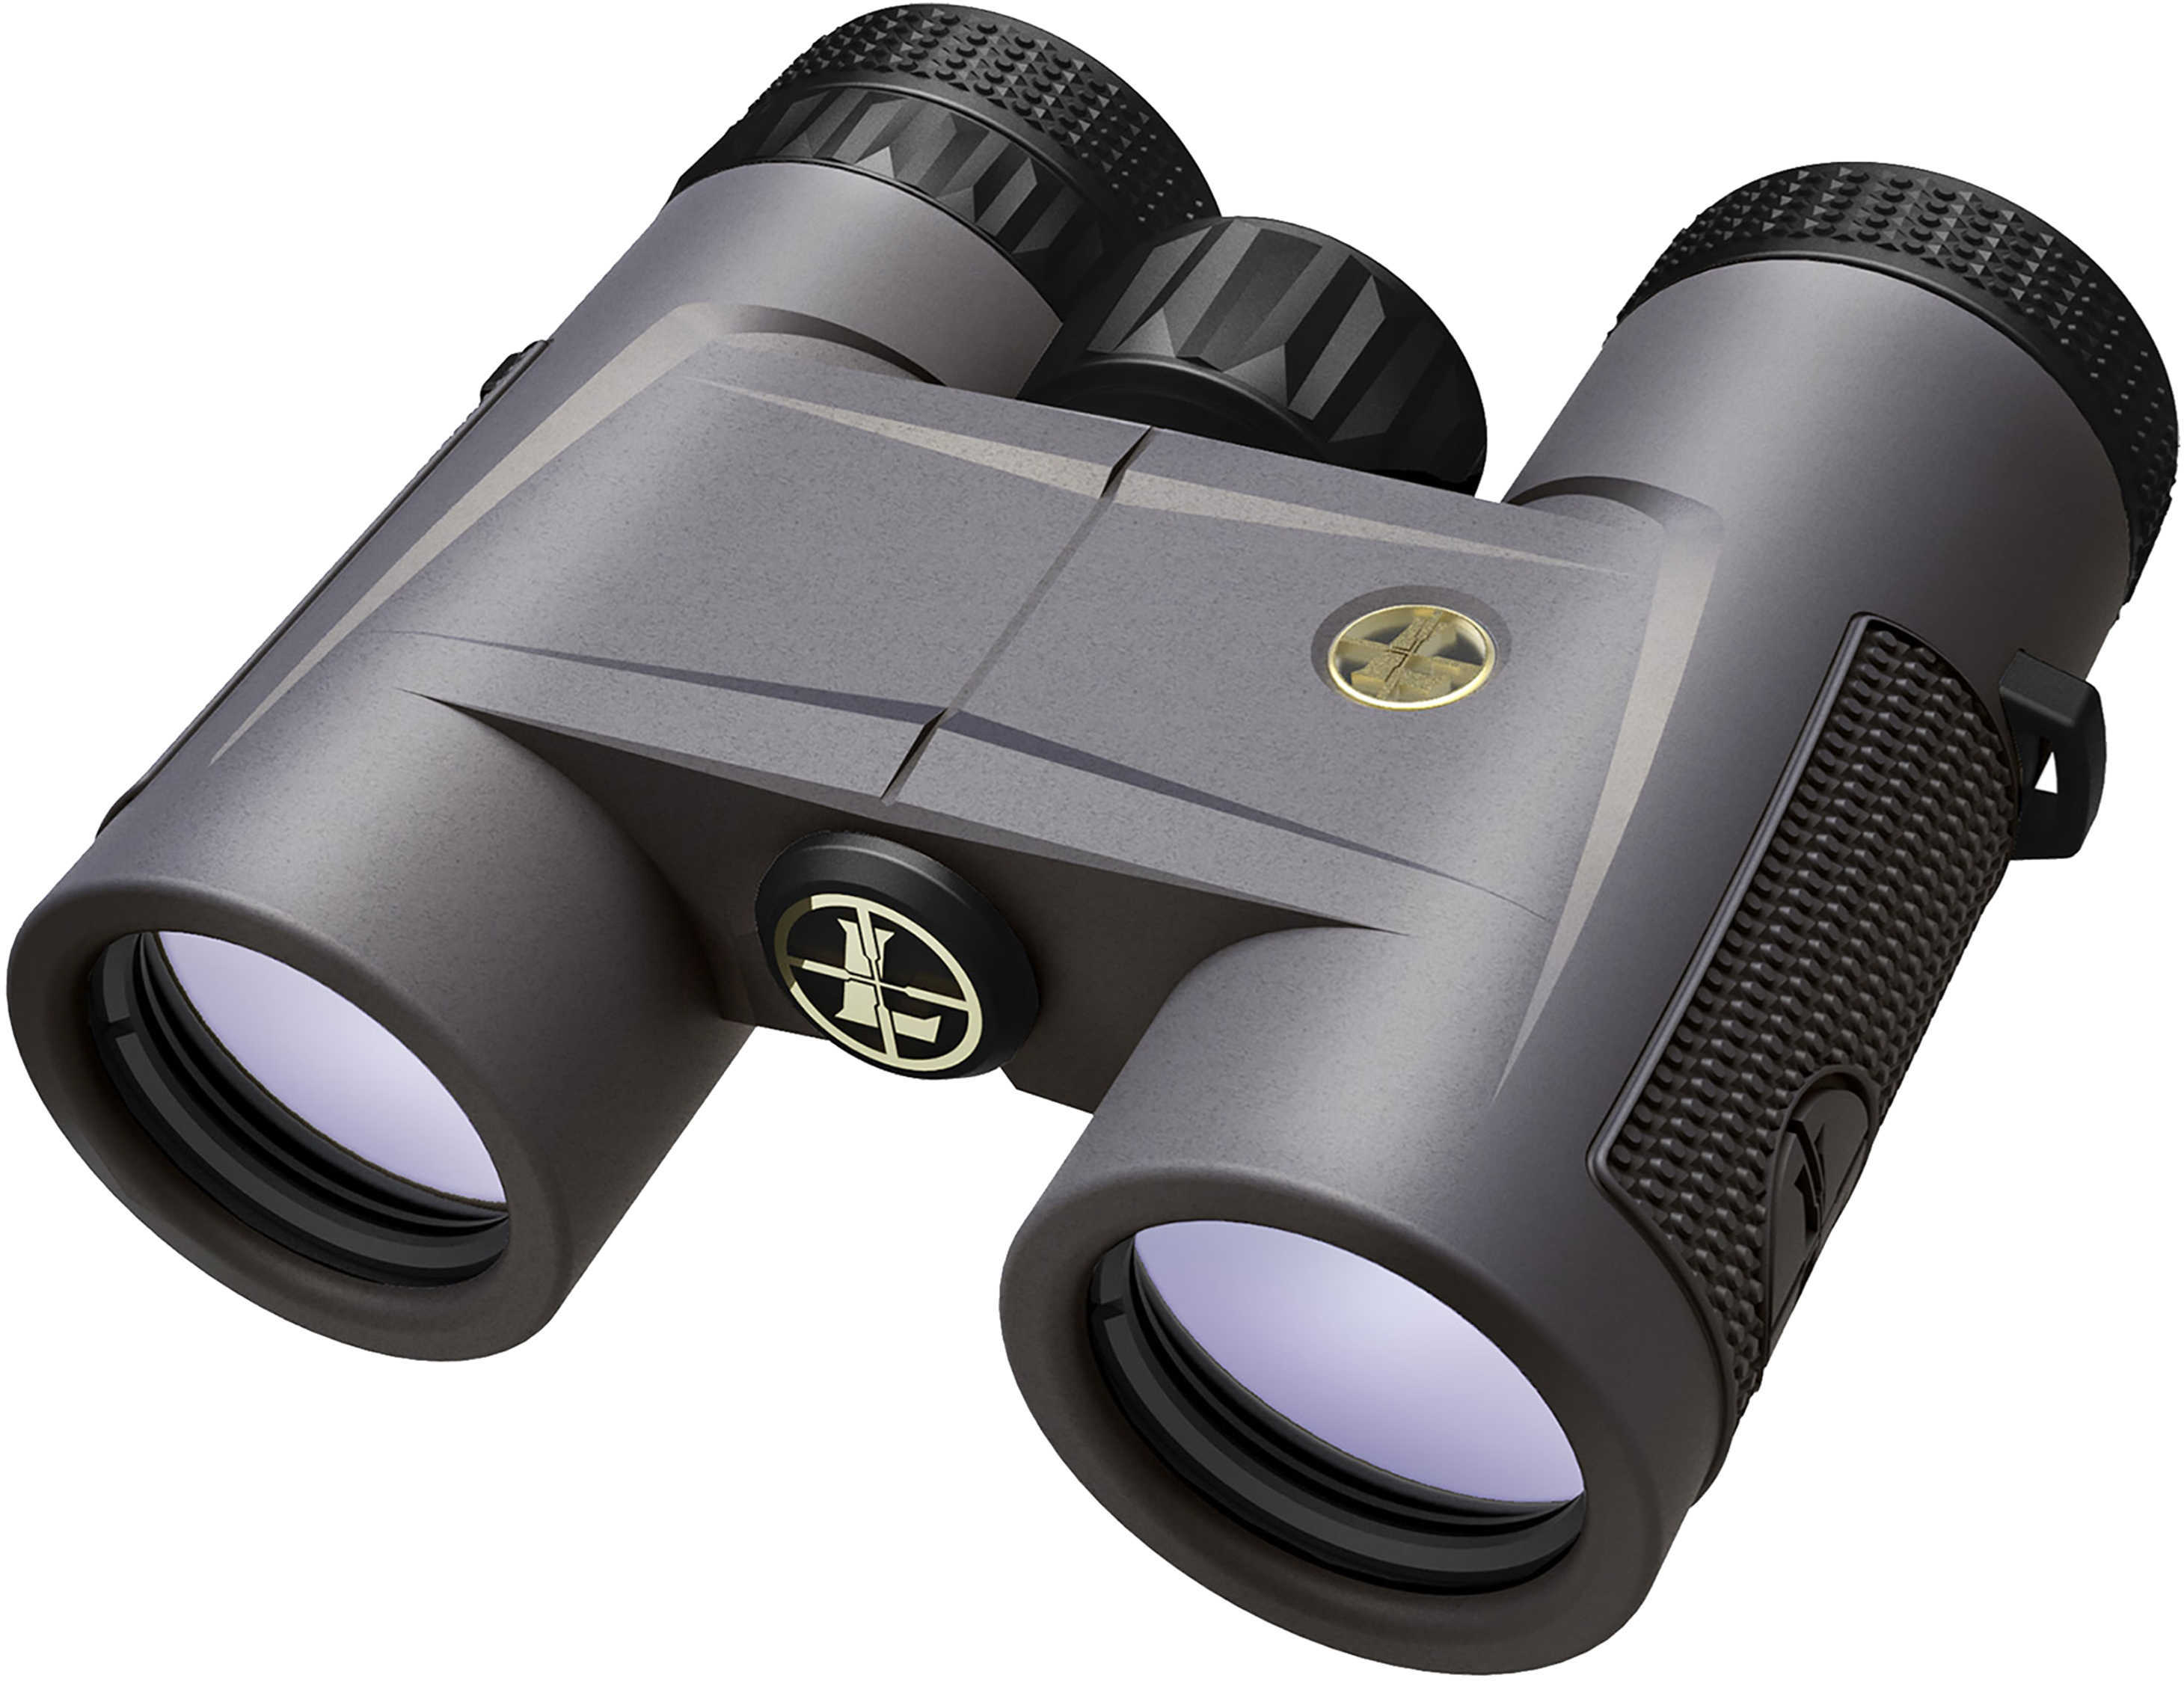 Leupold BX-2 Tioga HD Binocular 8x32mm Roof Prism Shadow Grey Finish 172688